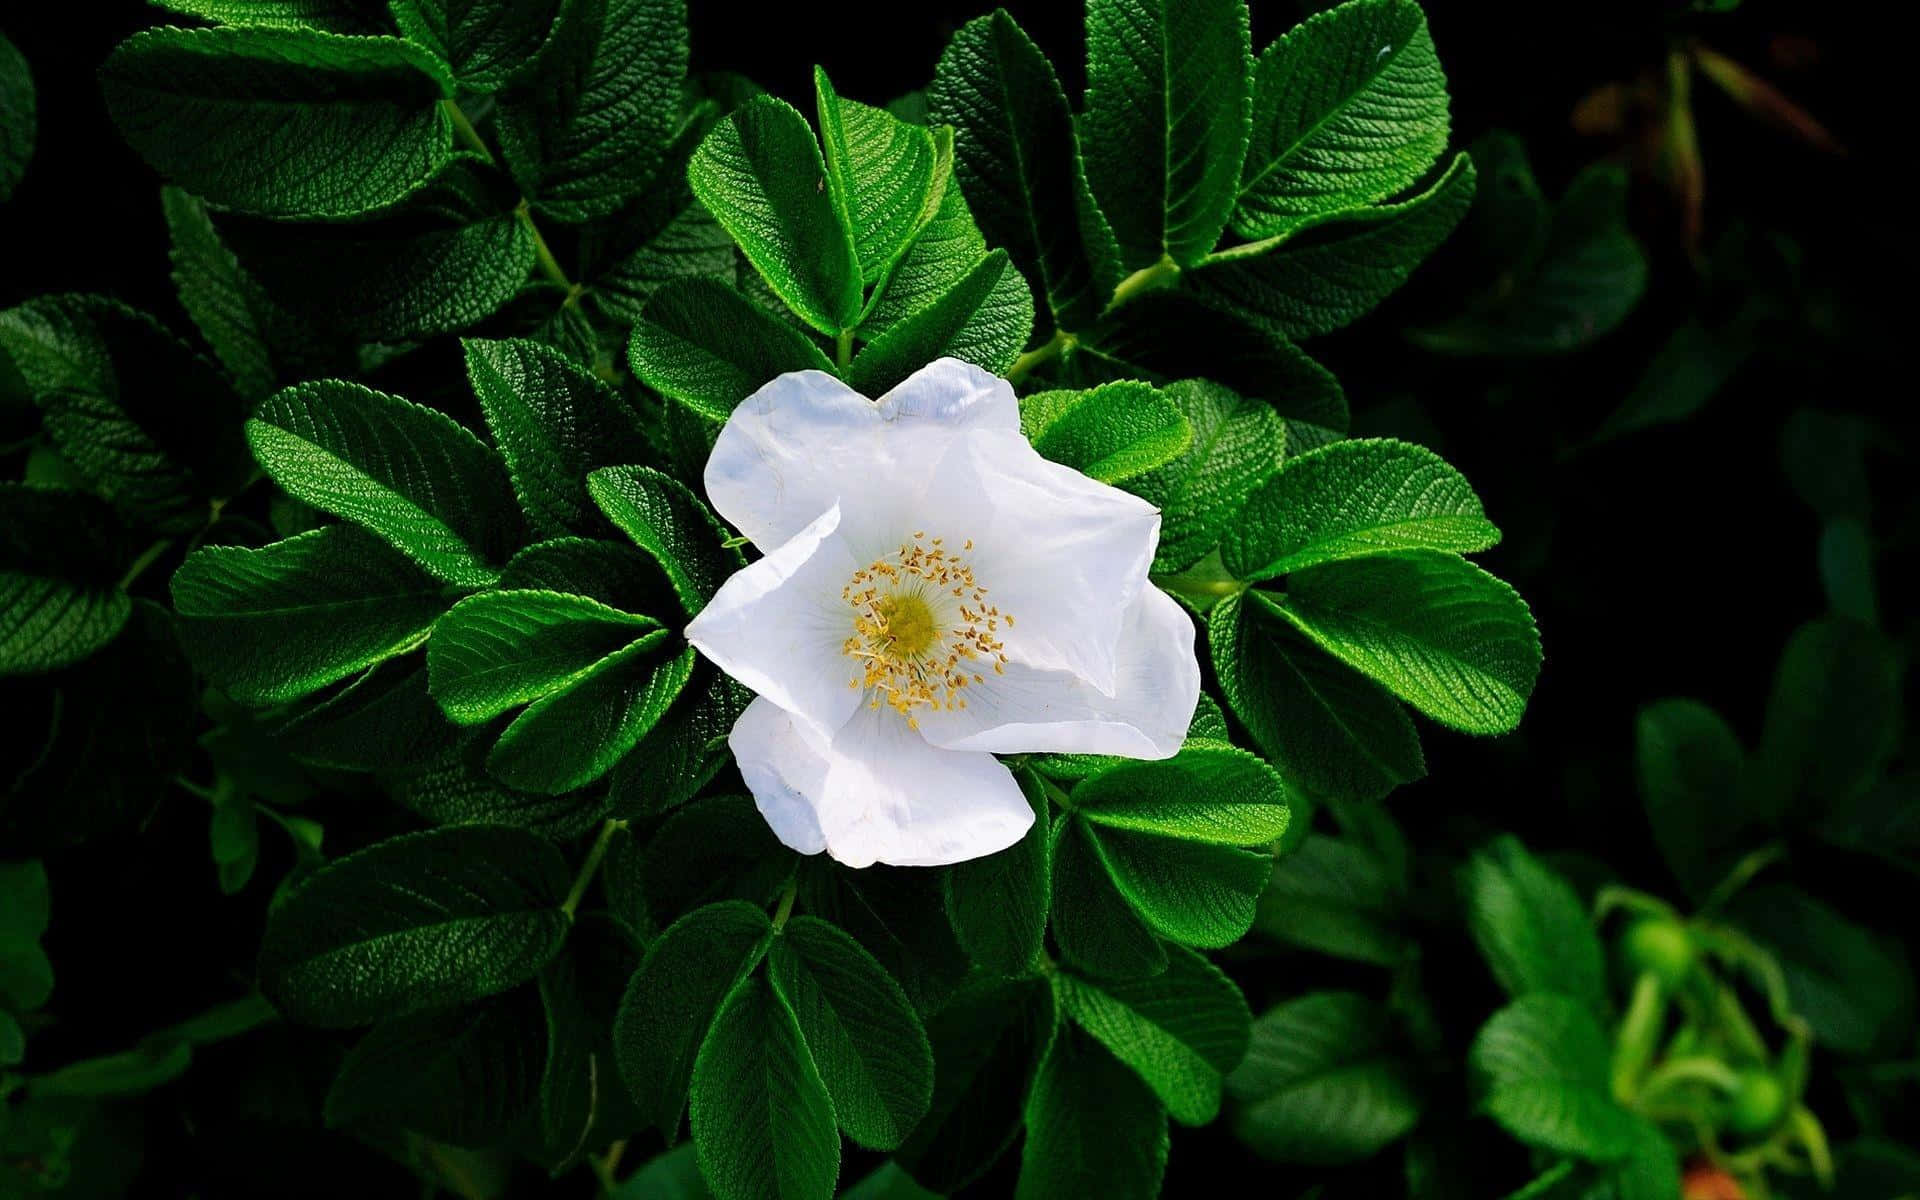 Stunning White Flowers in Full Bloom